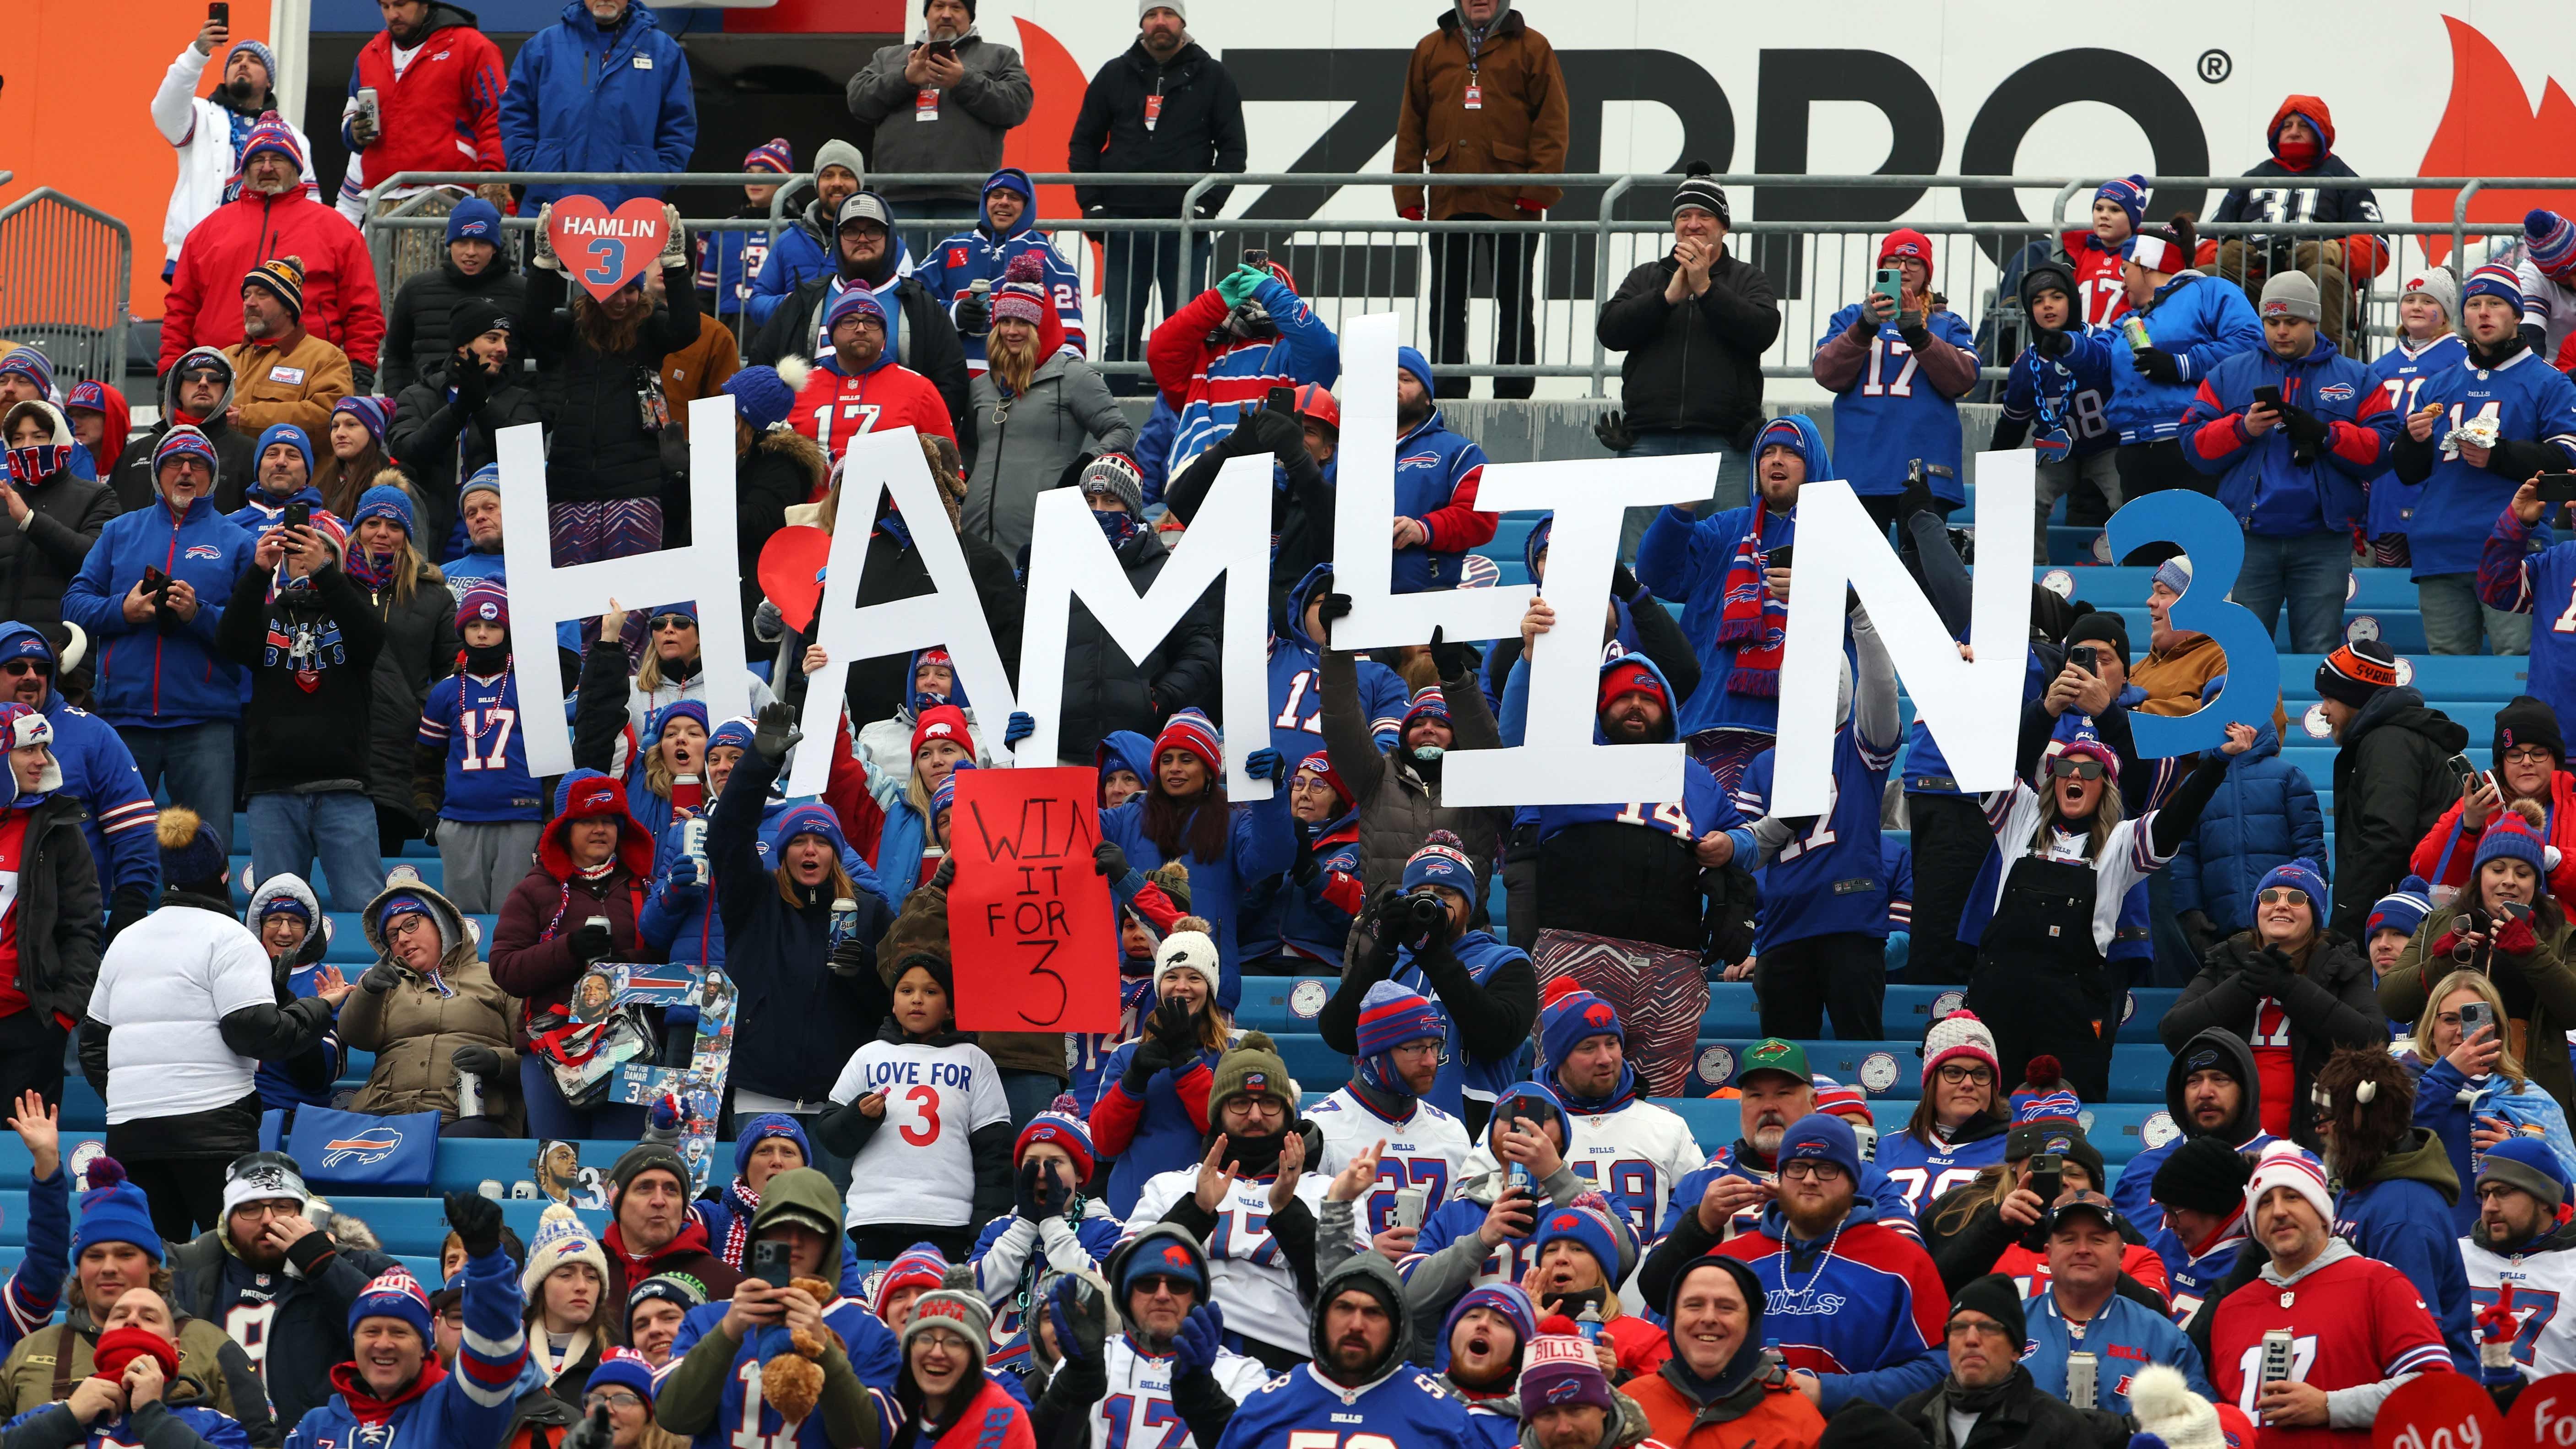 
                <strong>Bills Mafia mit Hamlin-Schriftzug im Stadion</strong><br>
                Auch die Bills Mafia im Stadion hat reichlich Unterstützung für Hamlin mitgebracht. Hier halten Fans einen Schriftzug des Spielers hoch.
              